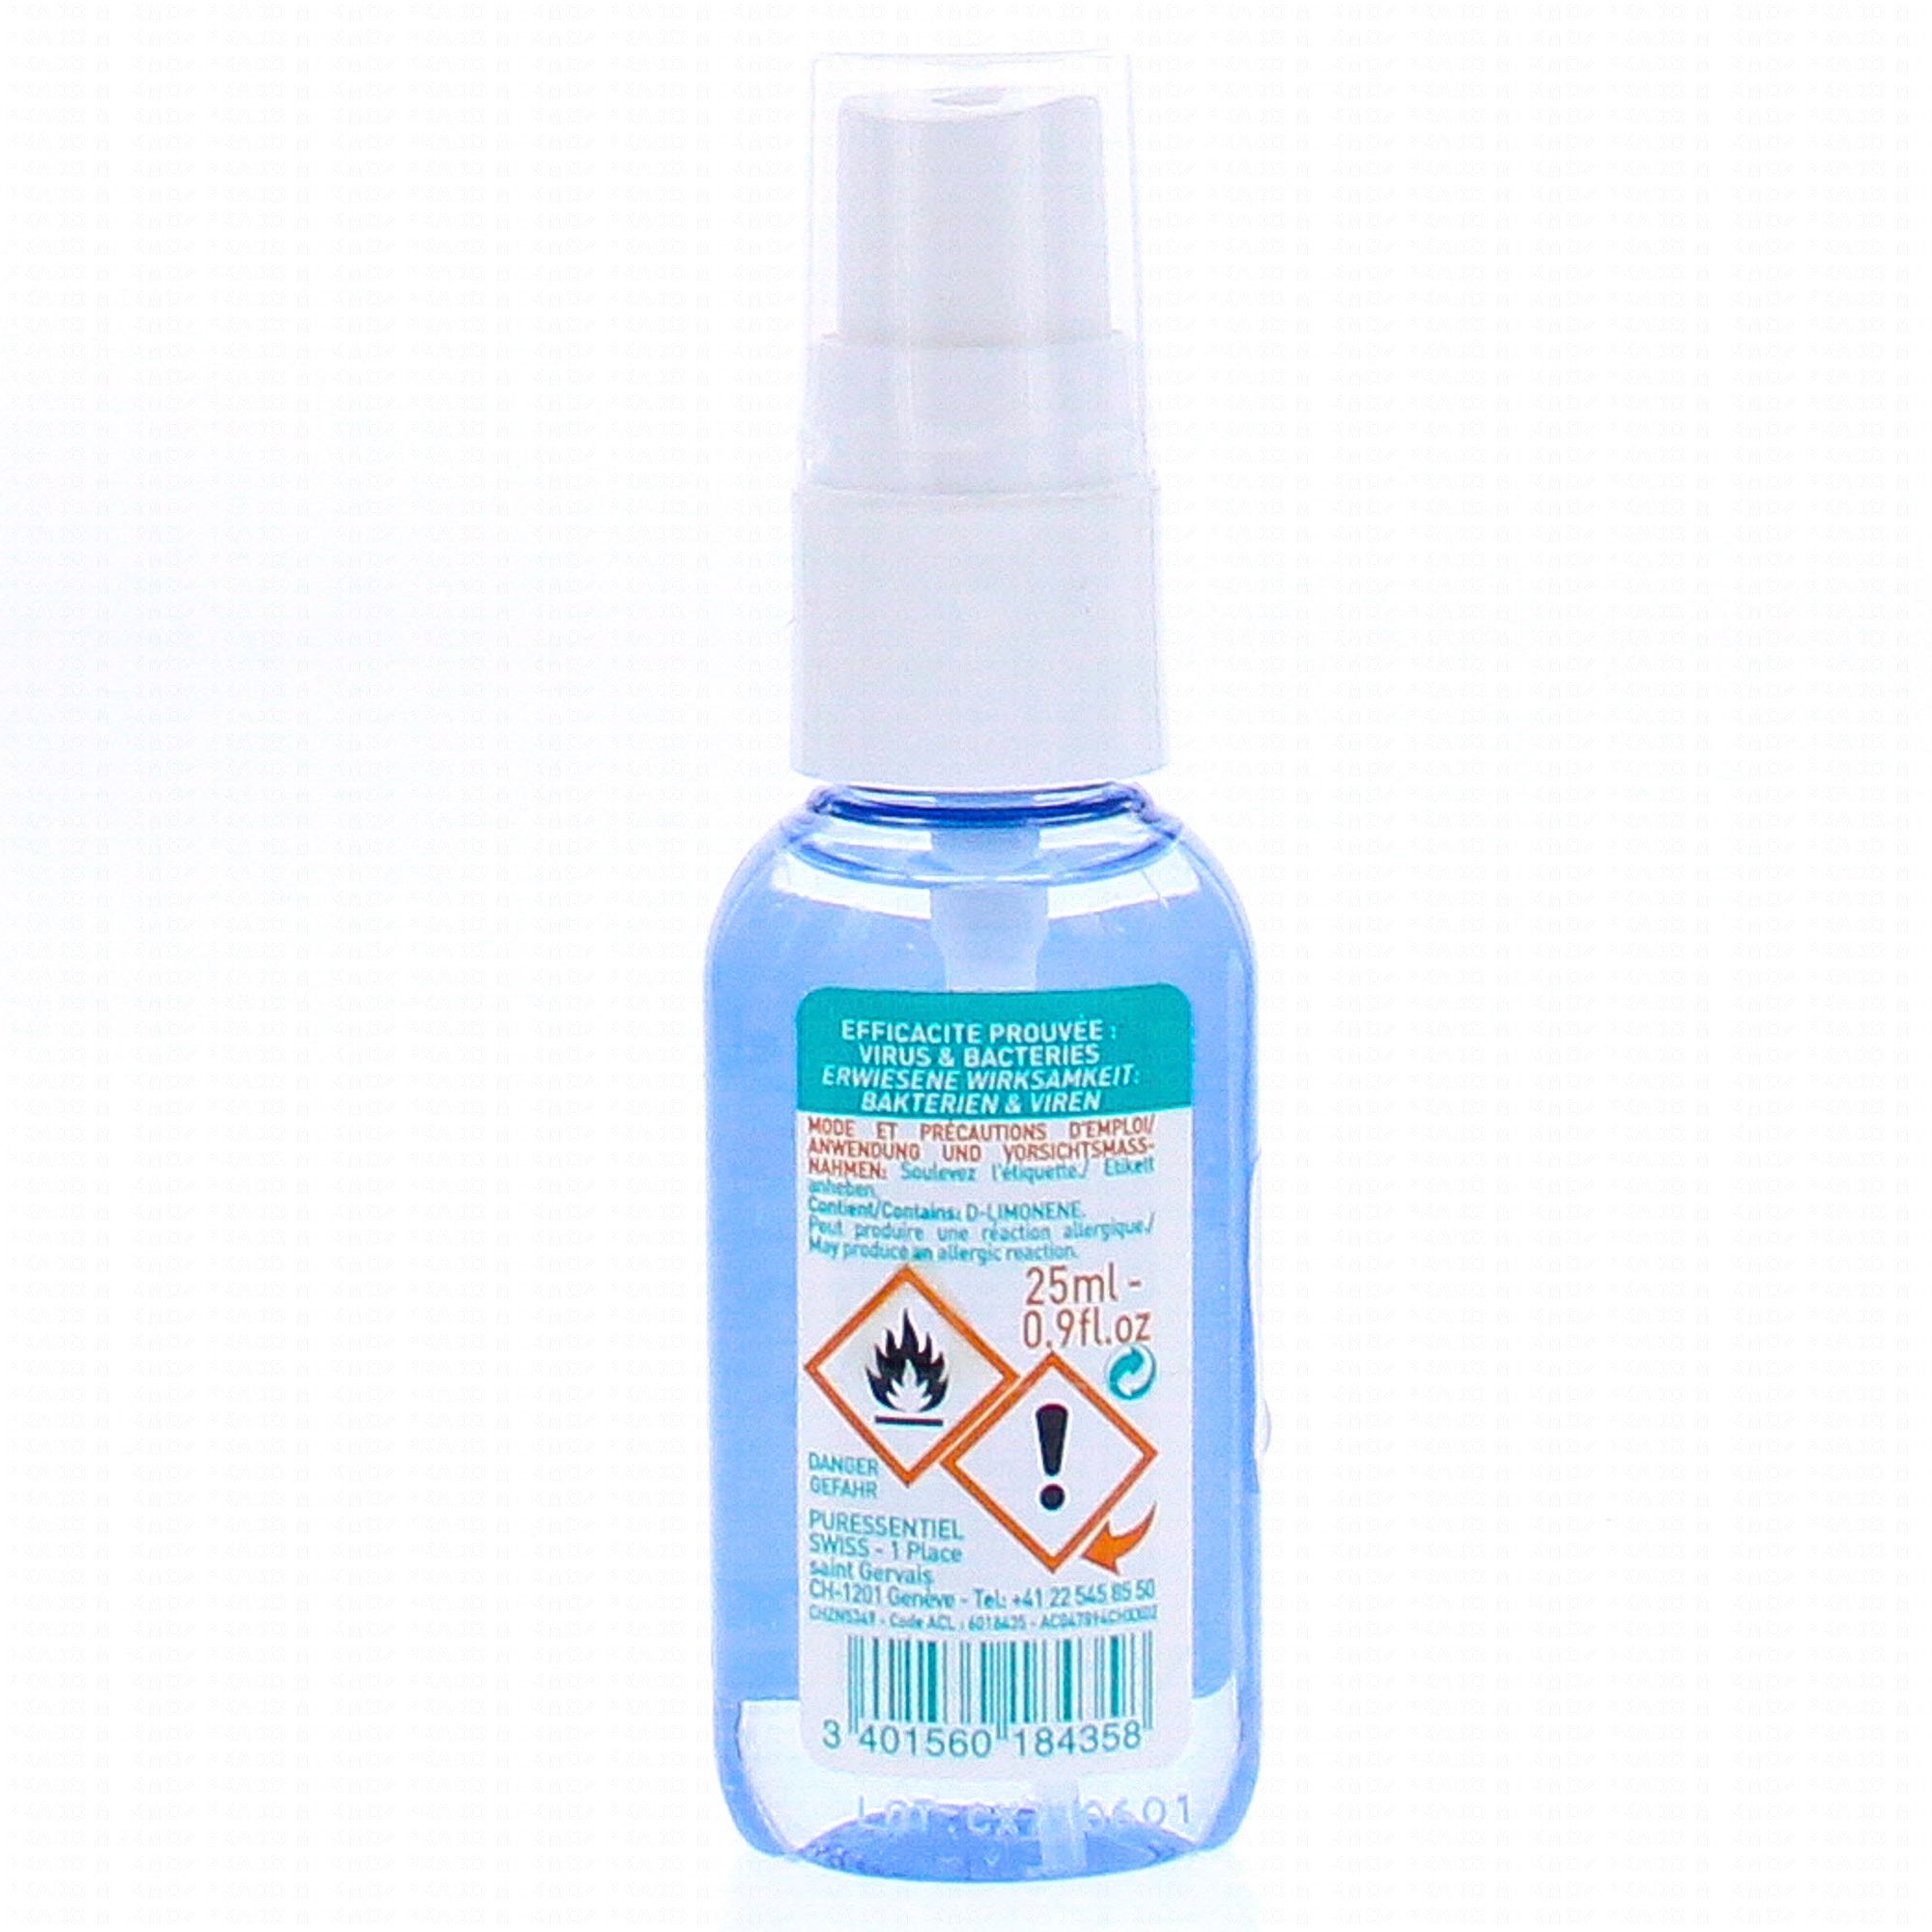 Puressentiel lotion spray antibactérien - Désinfection Mains Surfaces